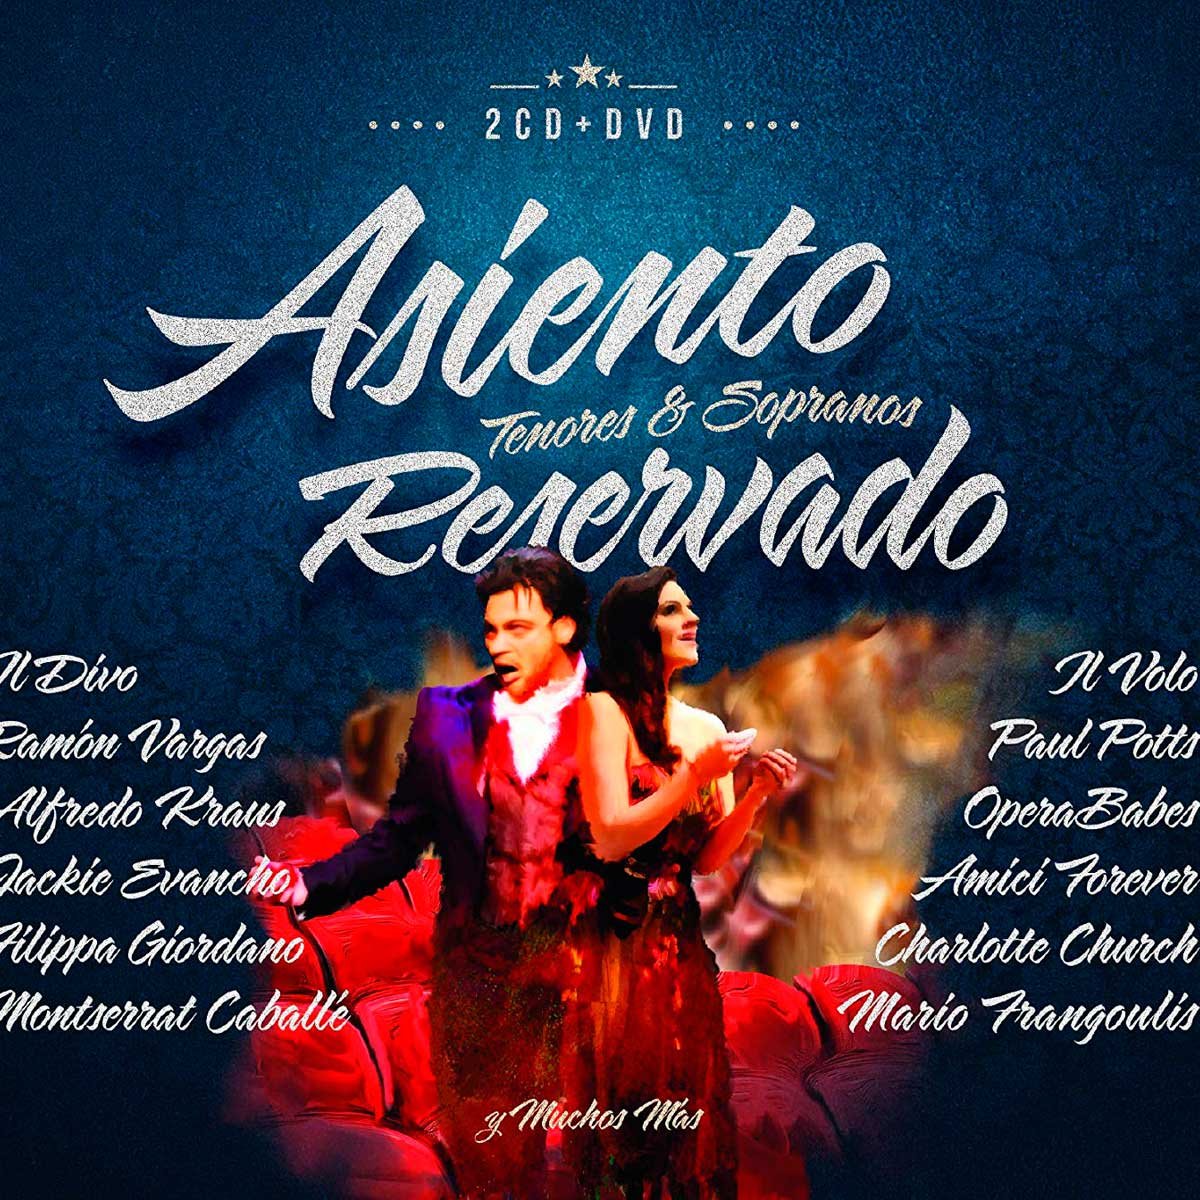 2 Cd's + Dvd Asiento Reservado Tenores & Sopranos